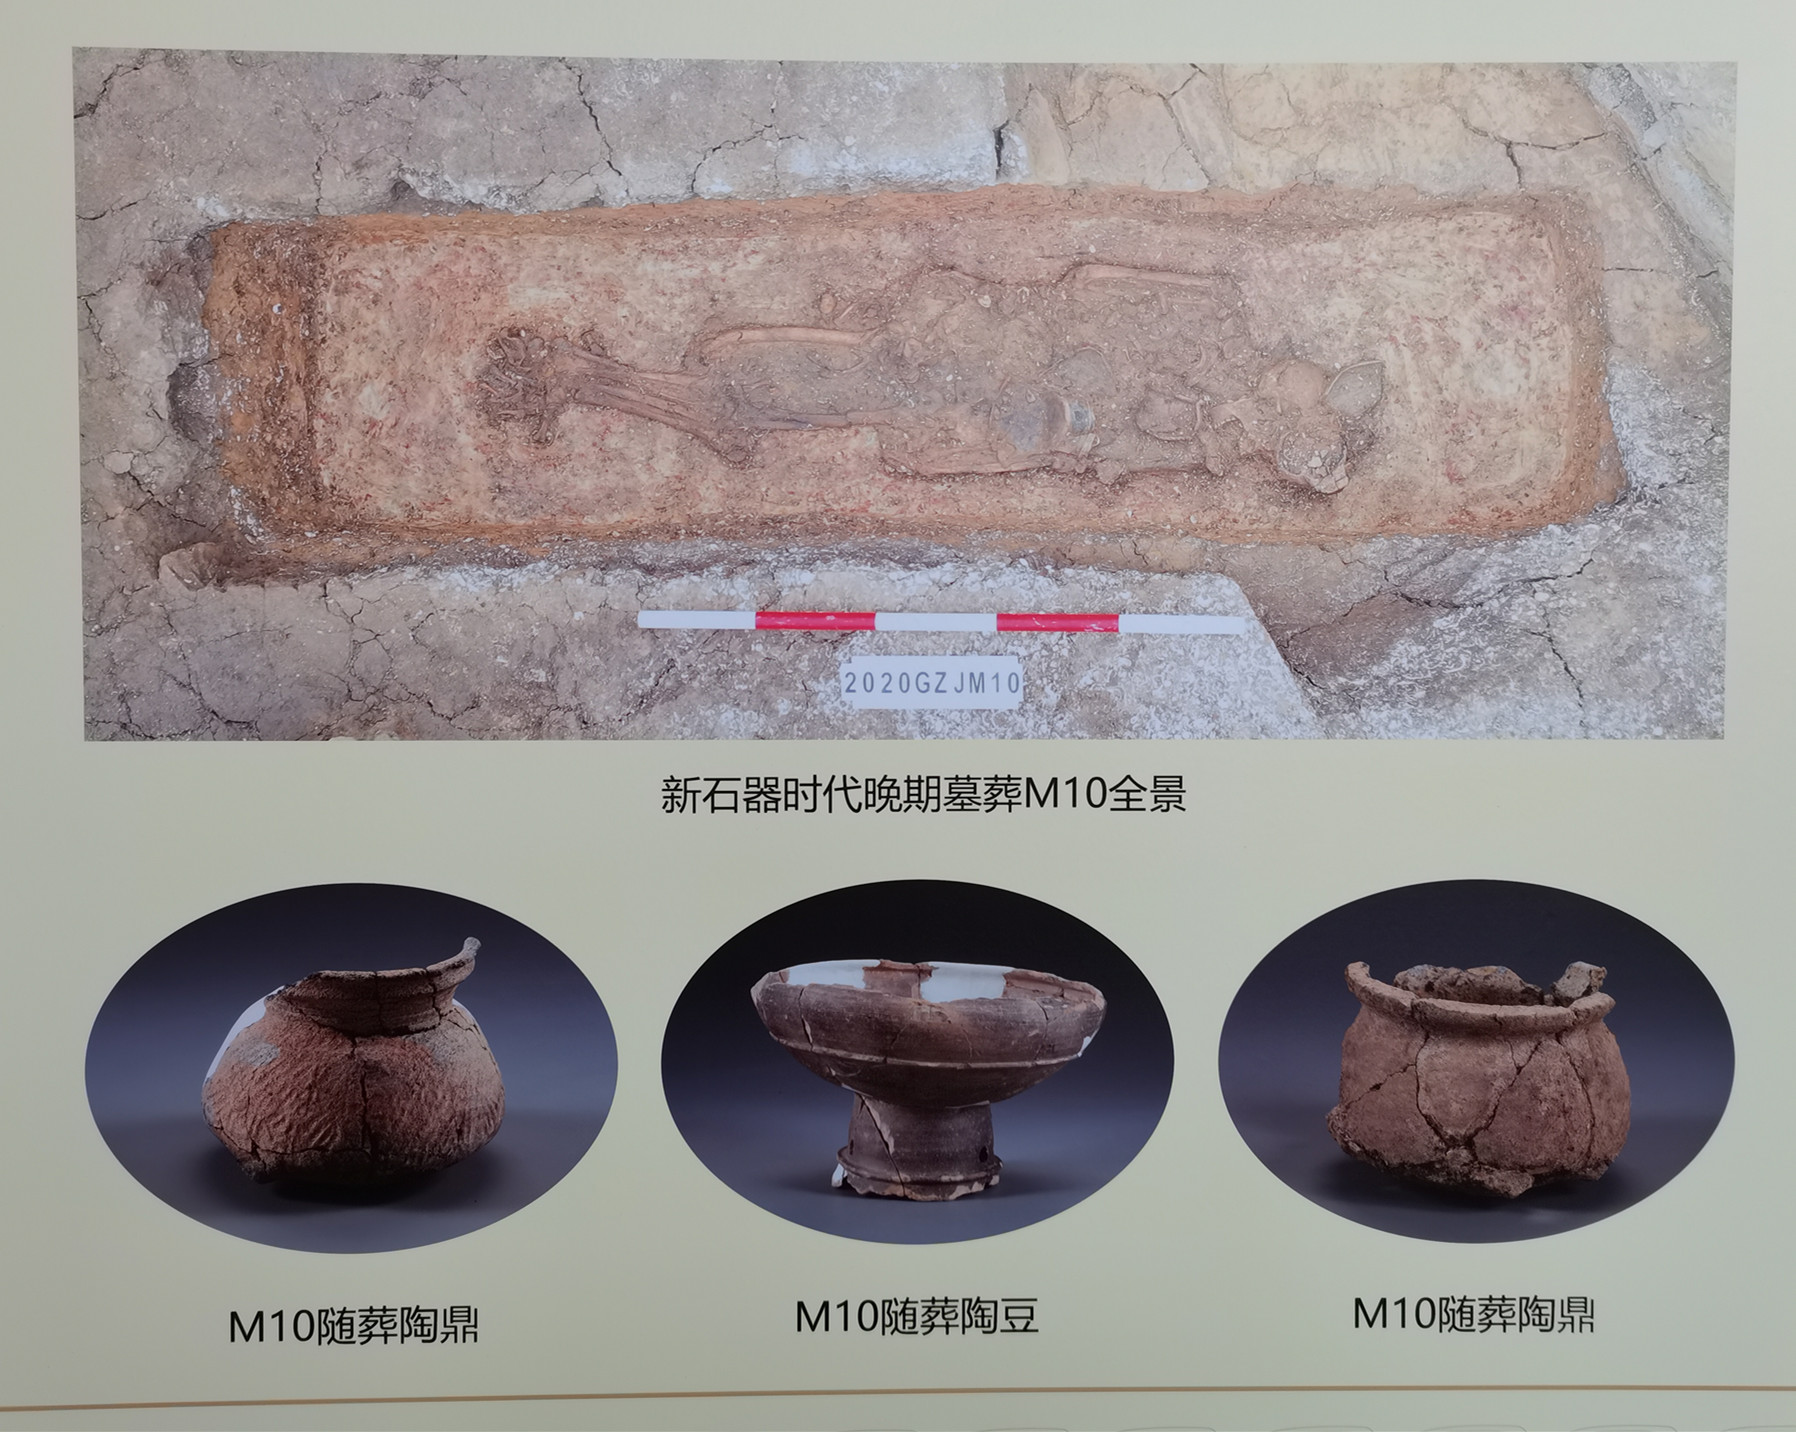 新石器时代晚期墓葬M10全景及随葬品.jpg